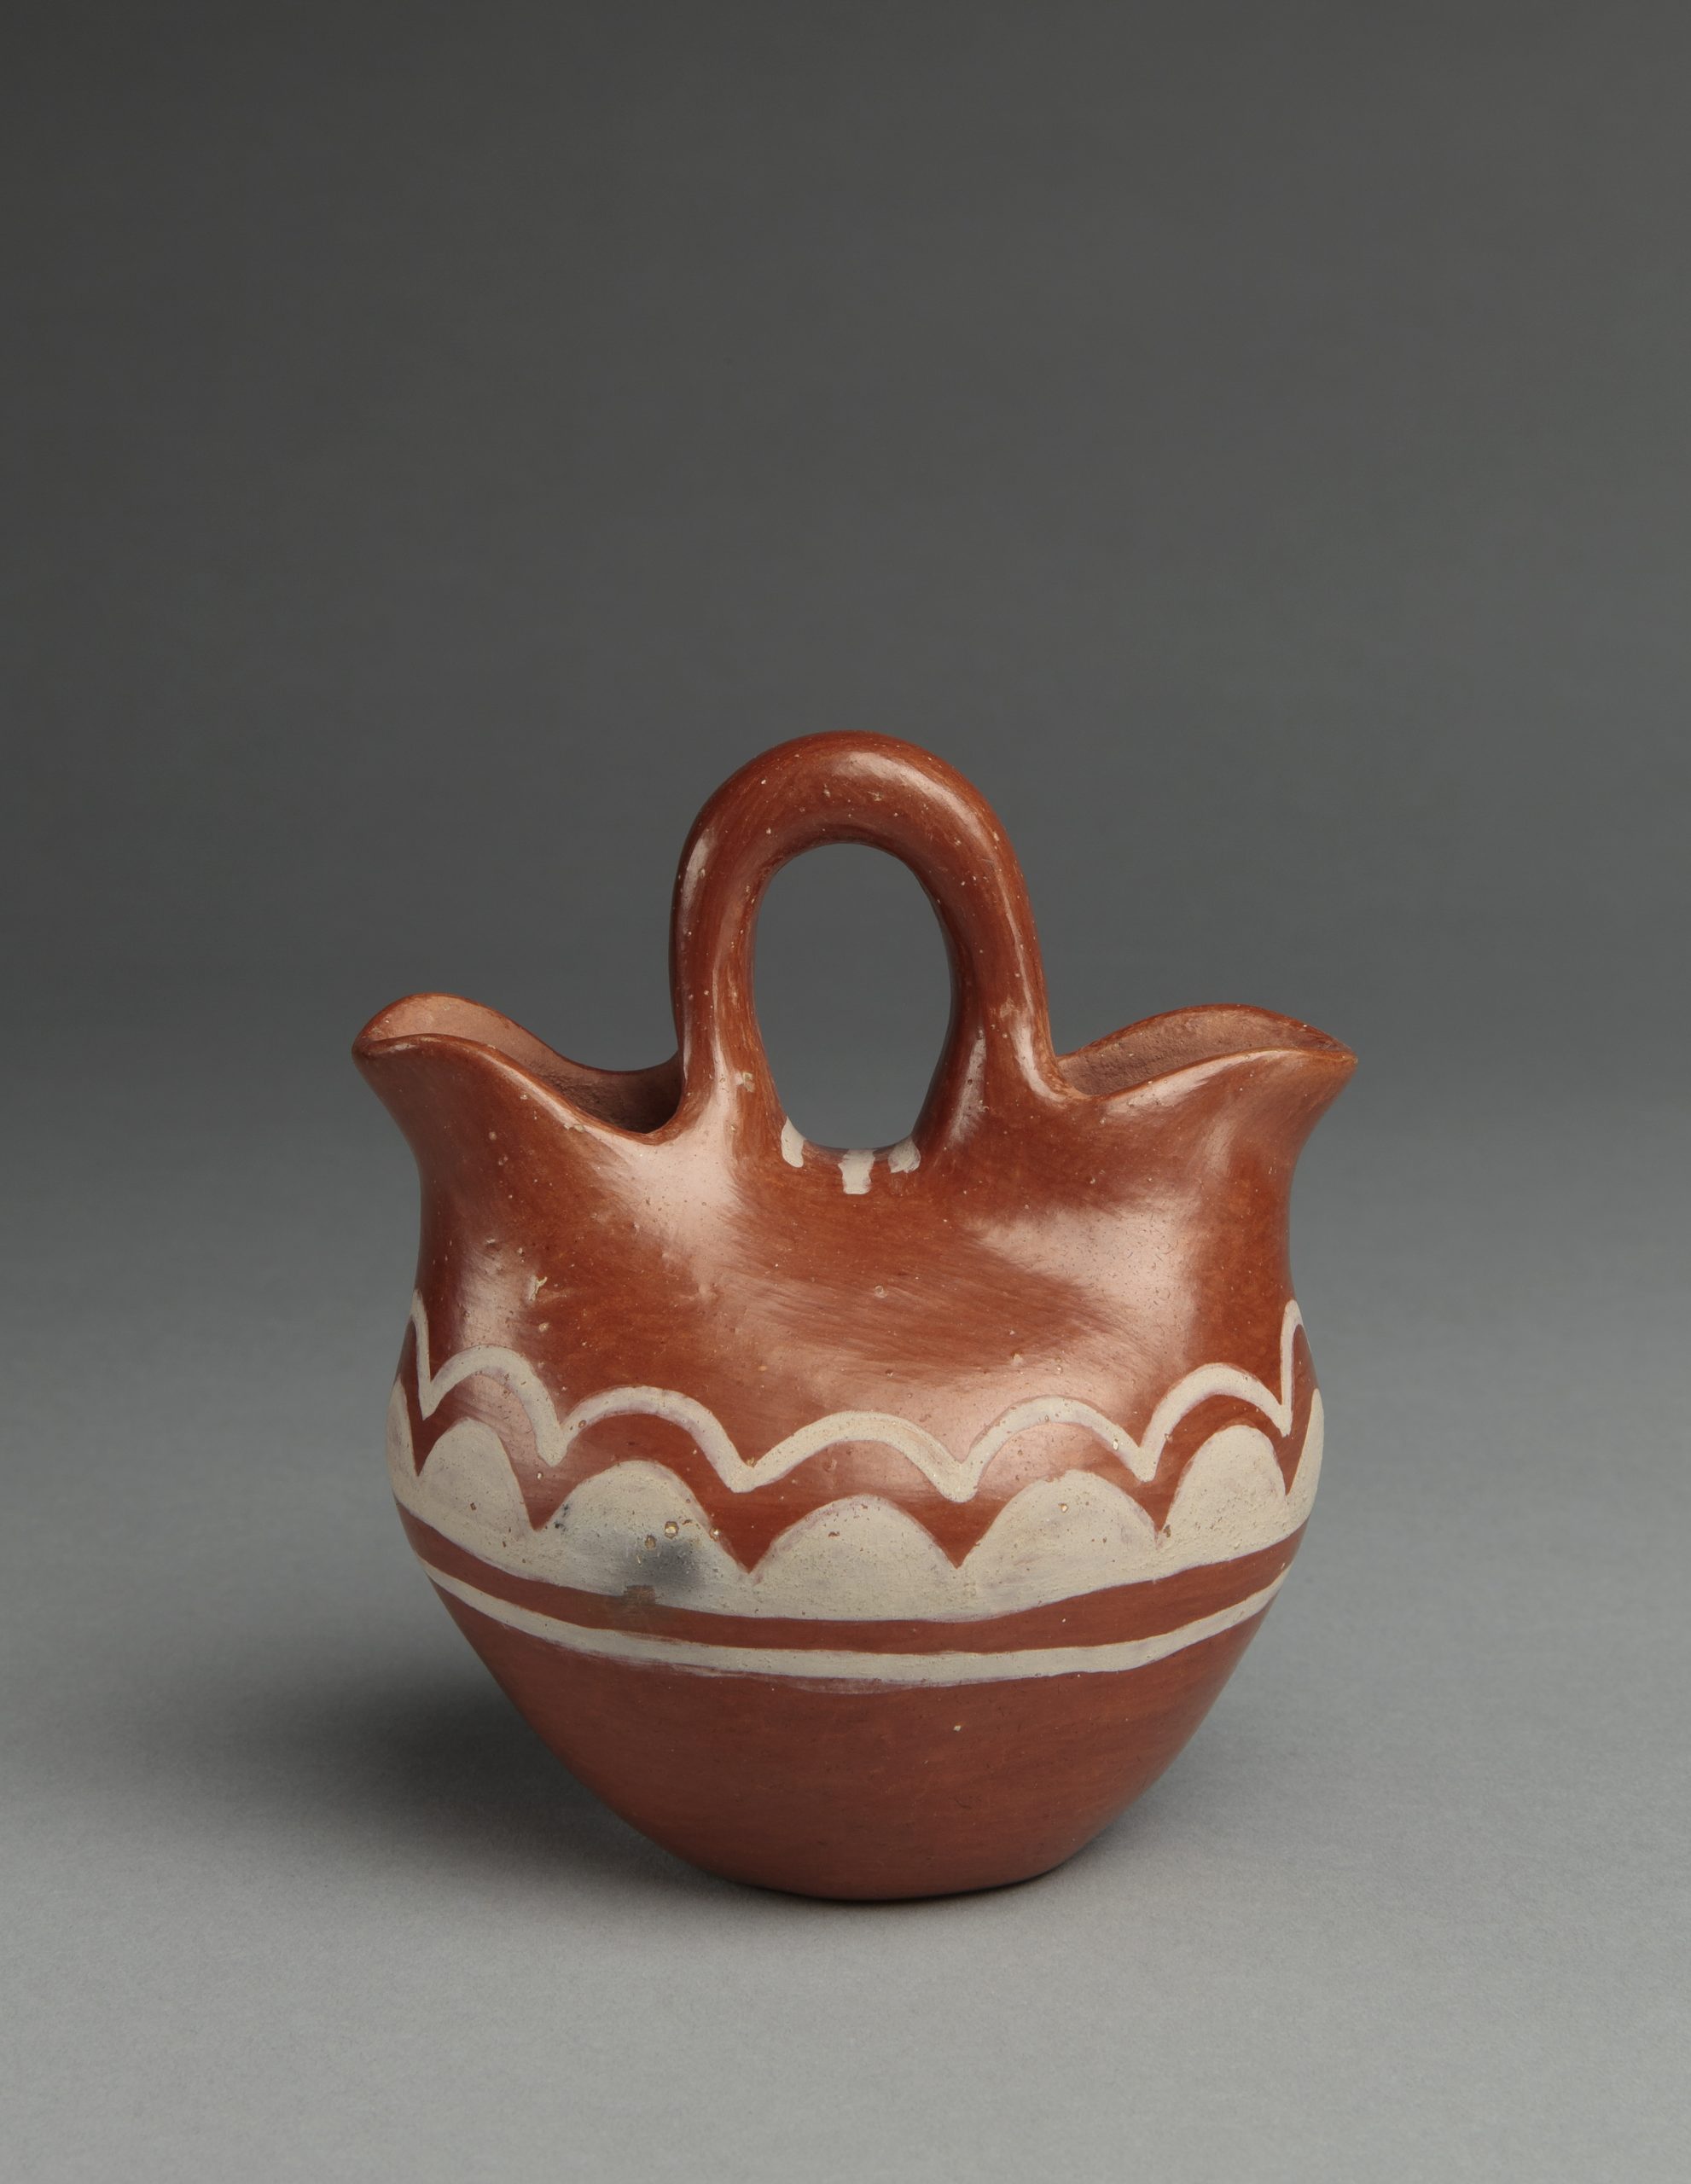 Vase, Dominguita Padilla (Tesuque Pueblo), 1932, clay, paints, 4 ½” x 3 ¾”. Cat. no. IAF.2861. Photo by Addison Doty.